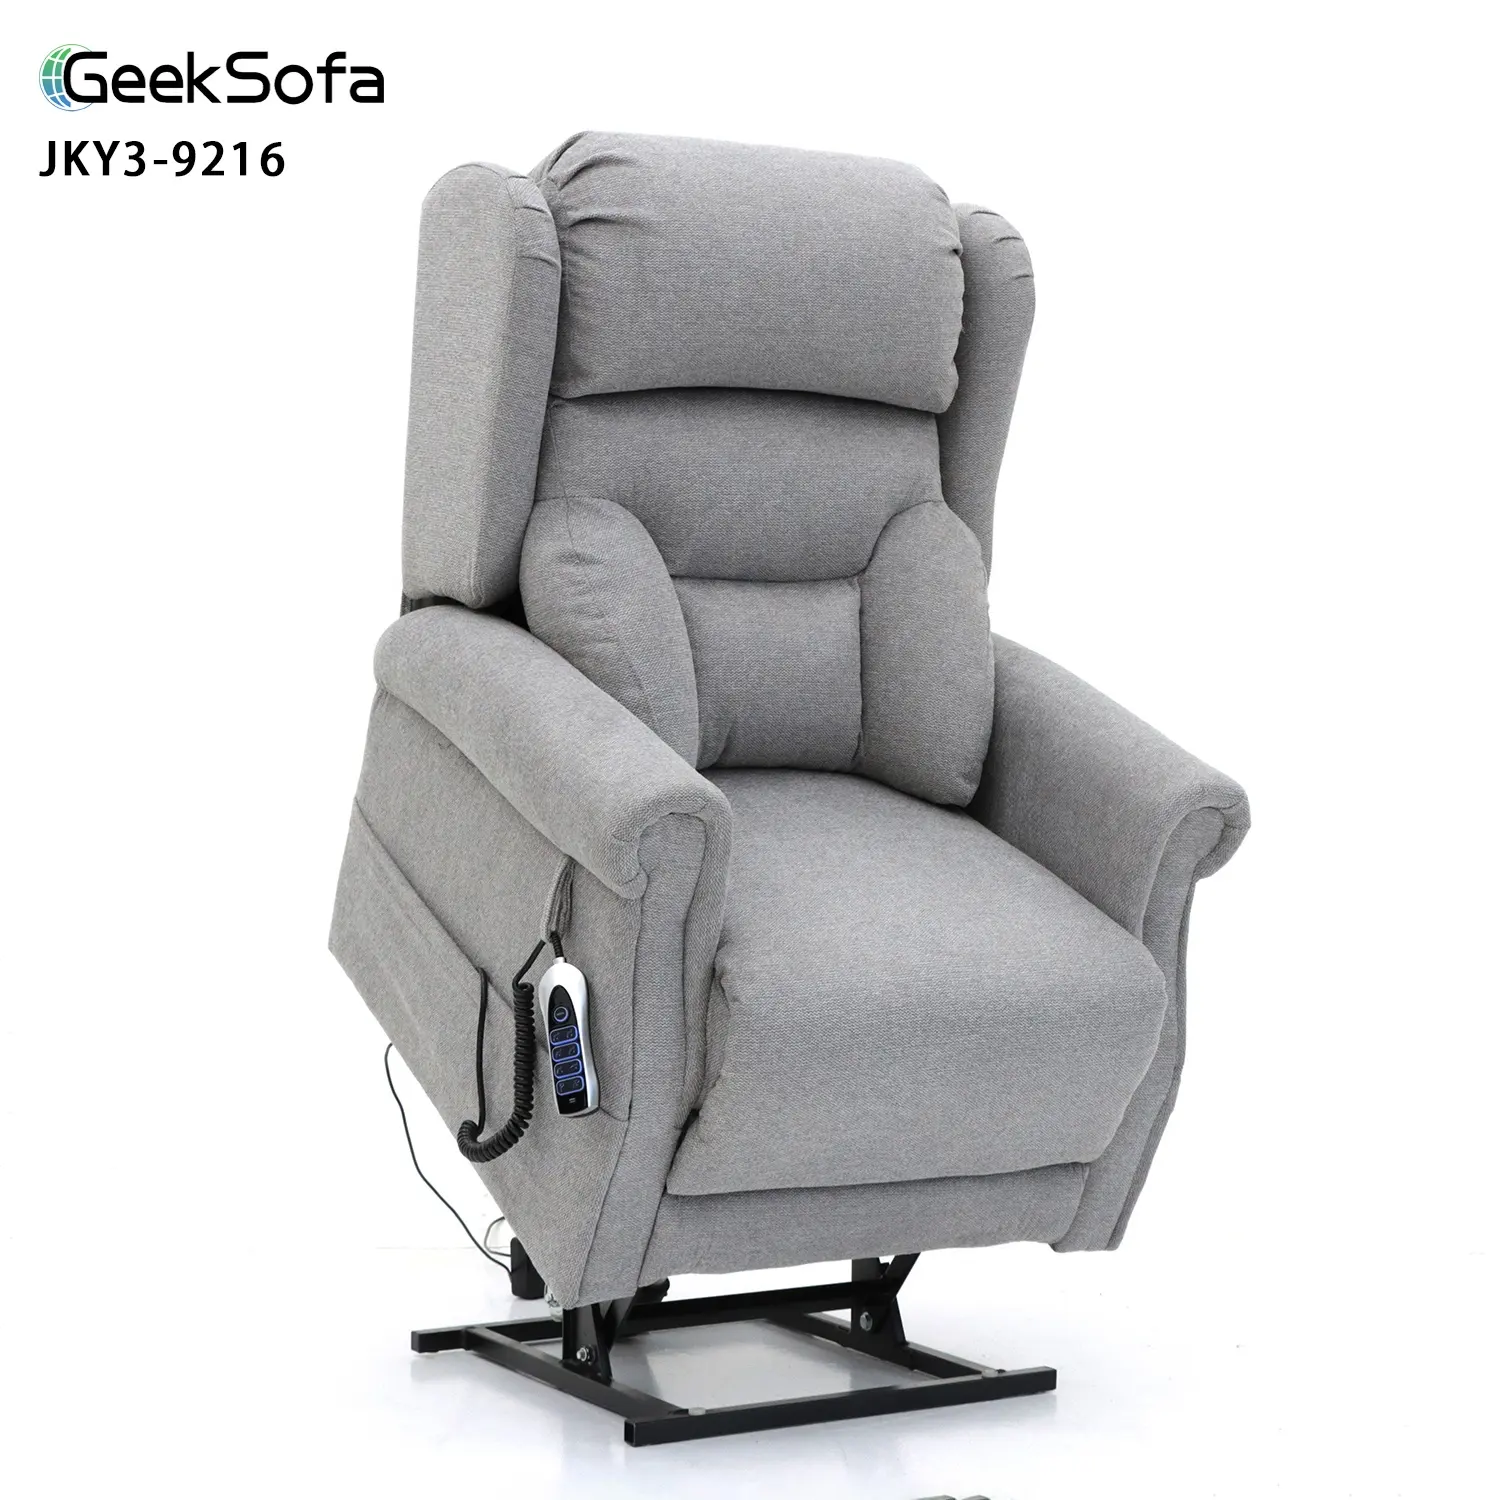 Geeksofa Quad מנוע כוח חשמלי רפואי מעלית כיסא כורסה עם משענת ראש כוח ותמיכה מותנית כוח לקשישים